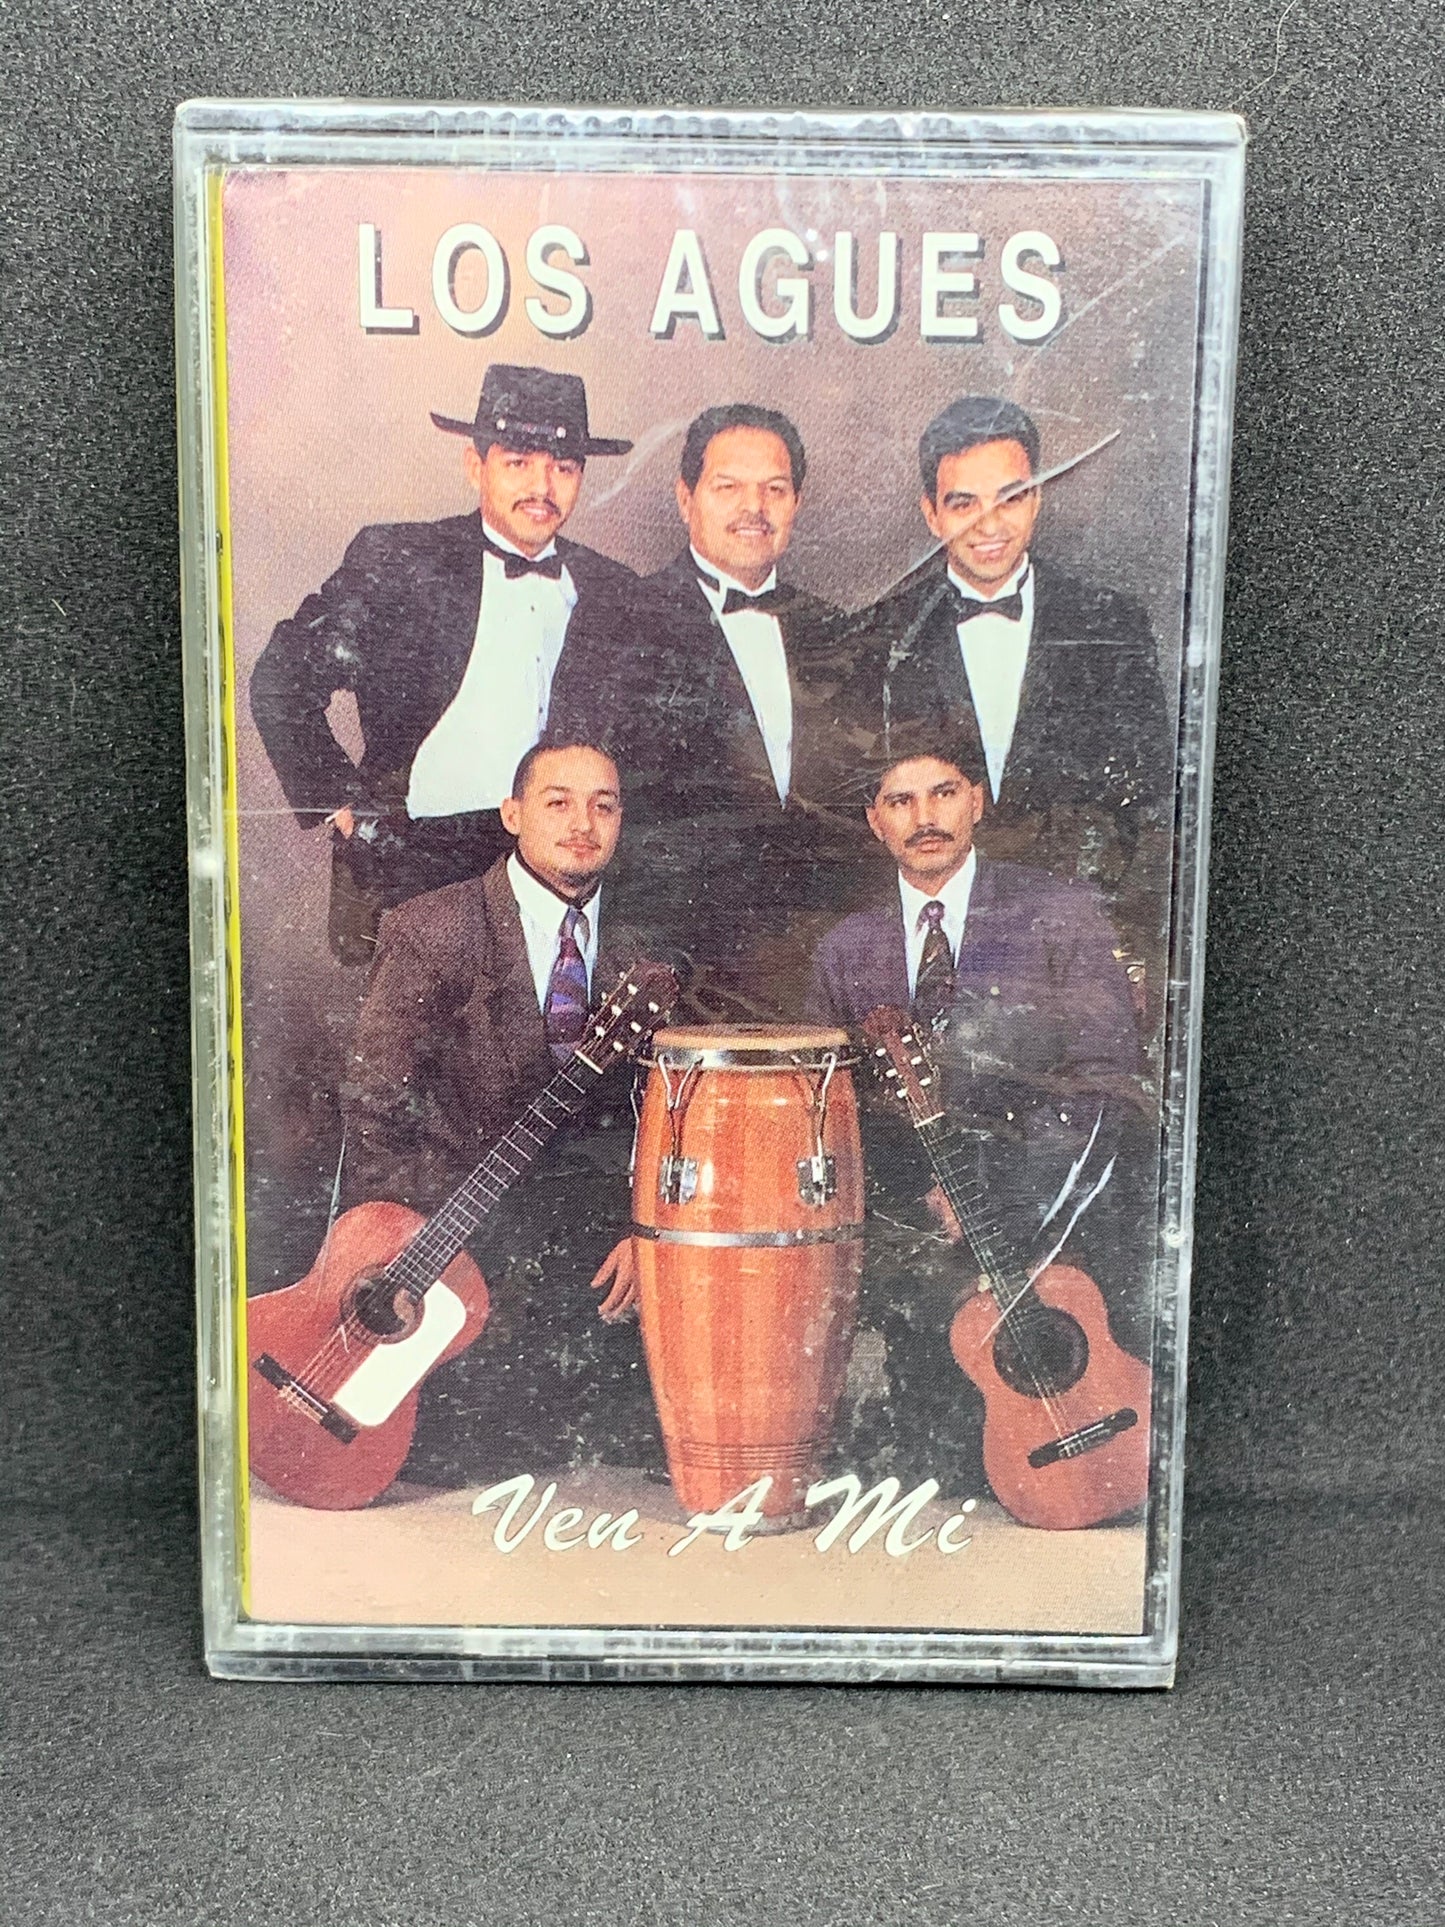 Los Agues - Ven A Mi (Cassette)